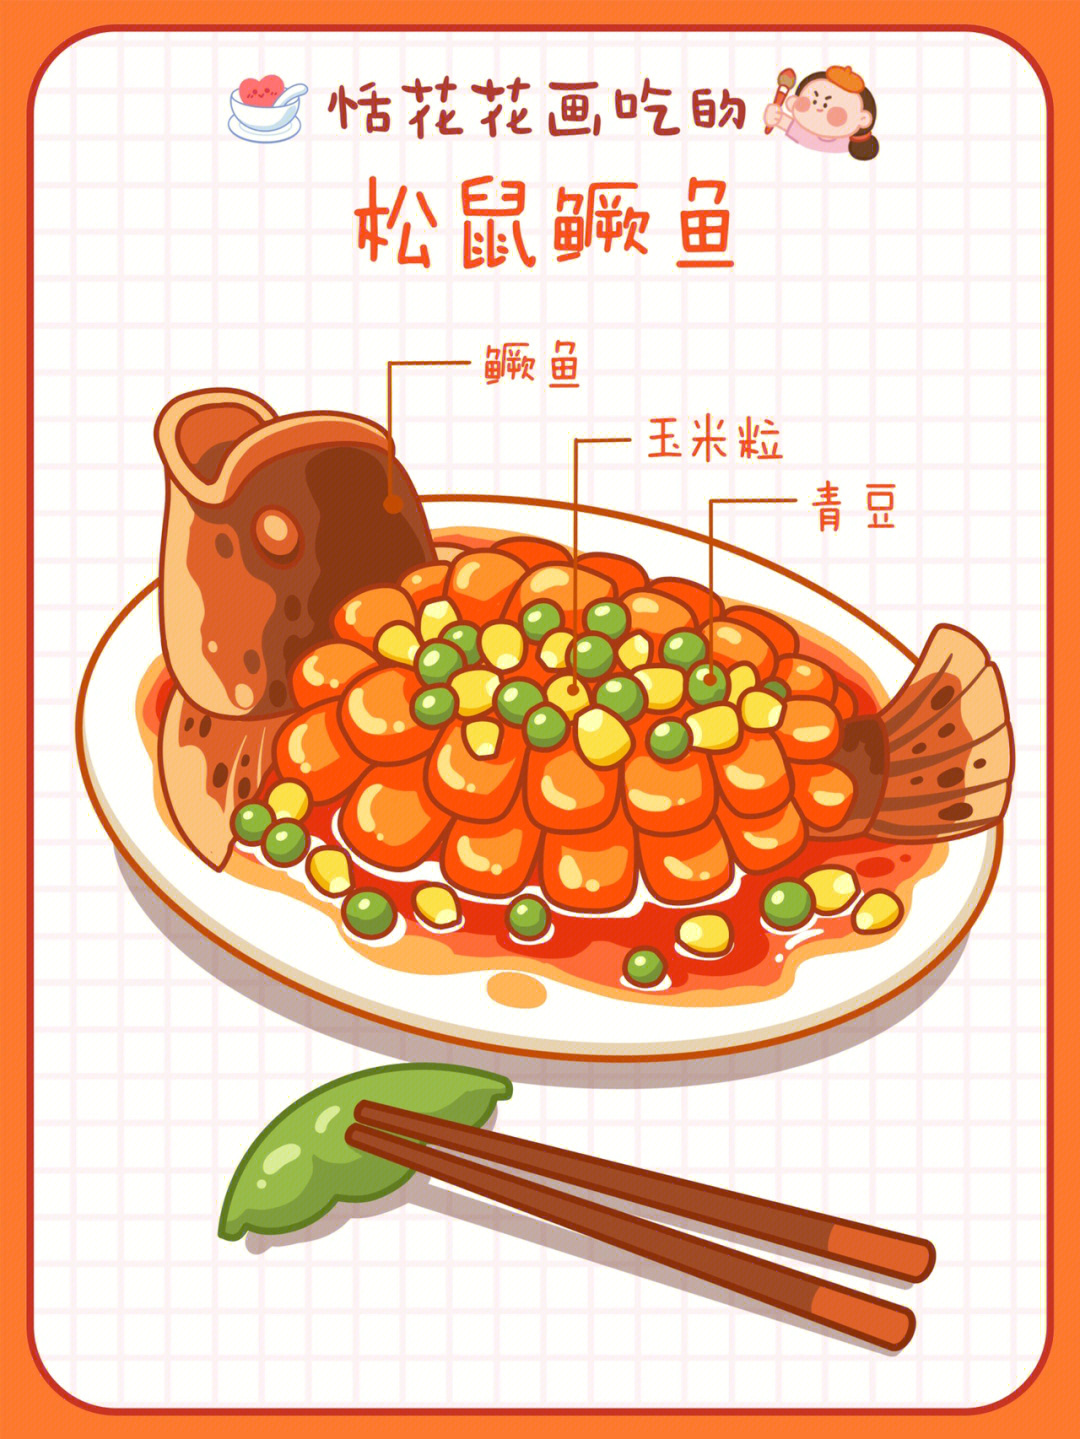 中国美食菜单简笔画图片